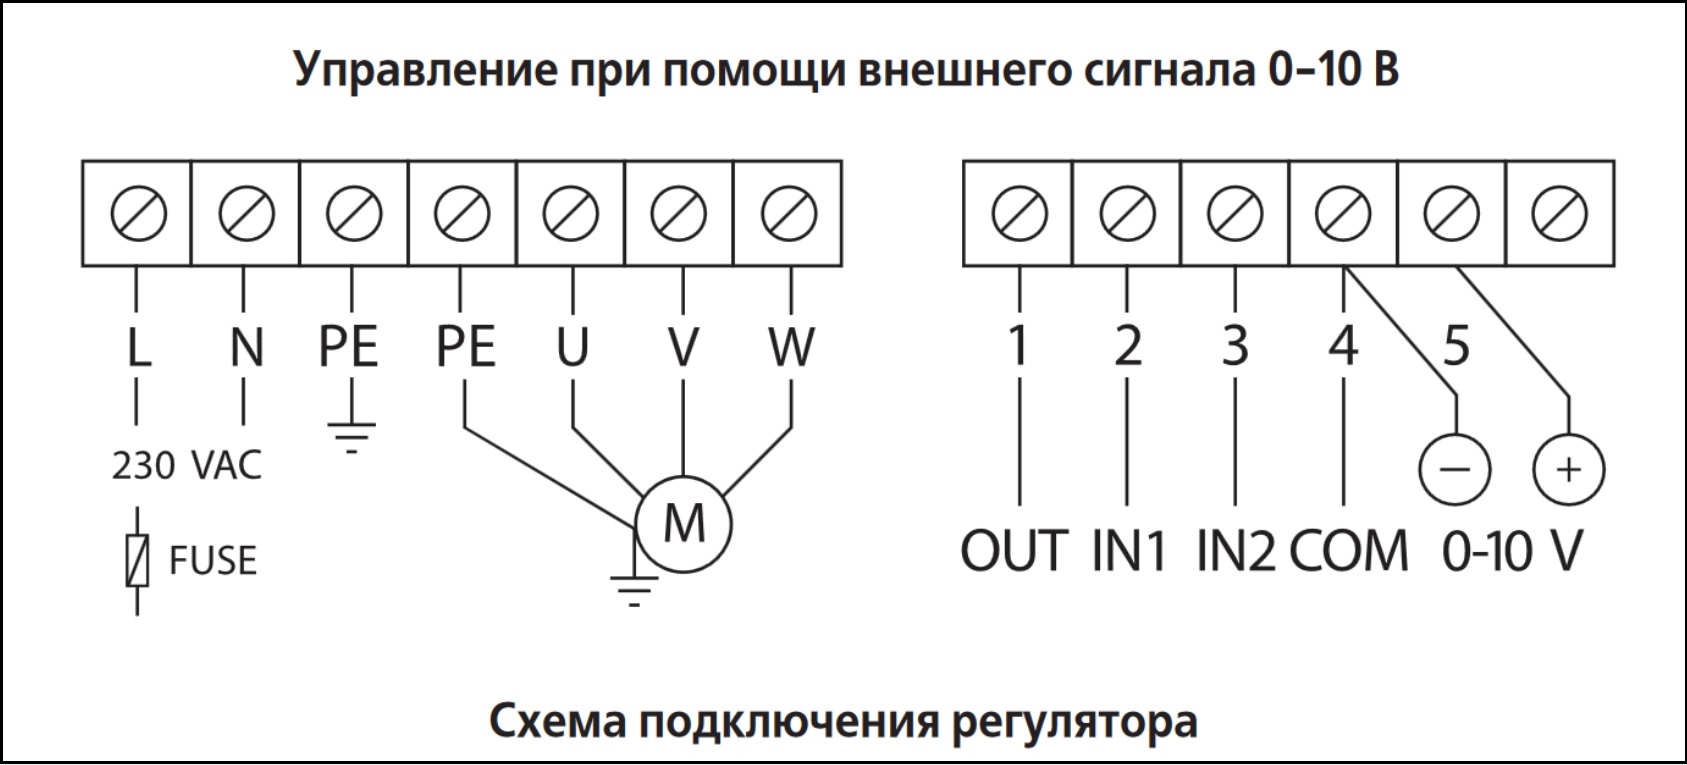 Схема подключения регулятора скорости ВЕНТС ВФЕД-400-ТА